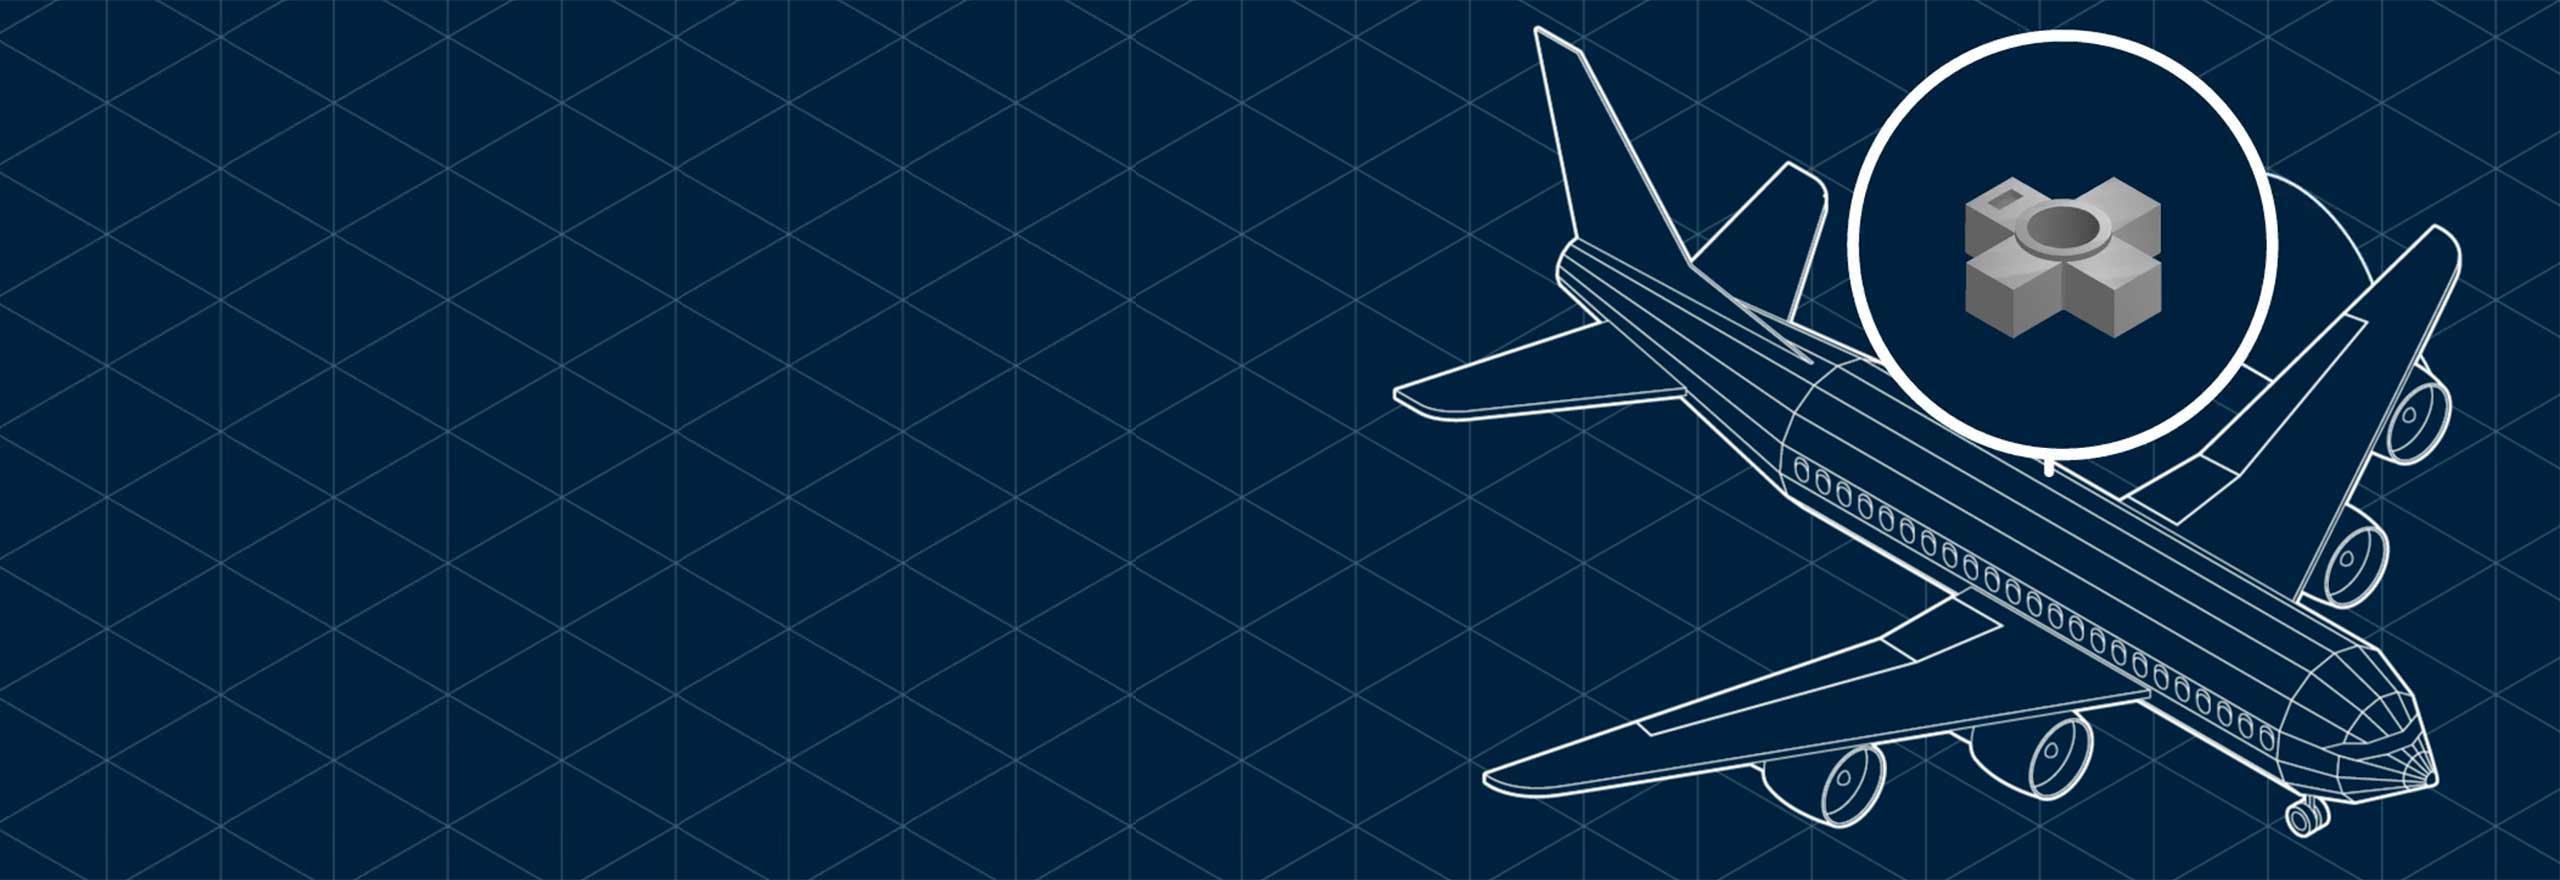 Dibujo de aviones sobre un fondo azul de triángulos, ilustrando la ingeniería inversa de una pieza en la fabricación aditiva